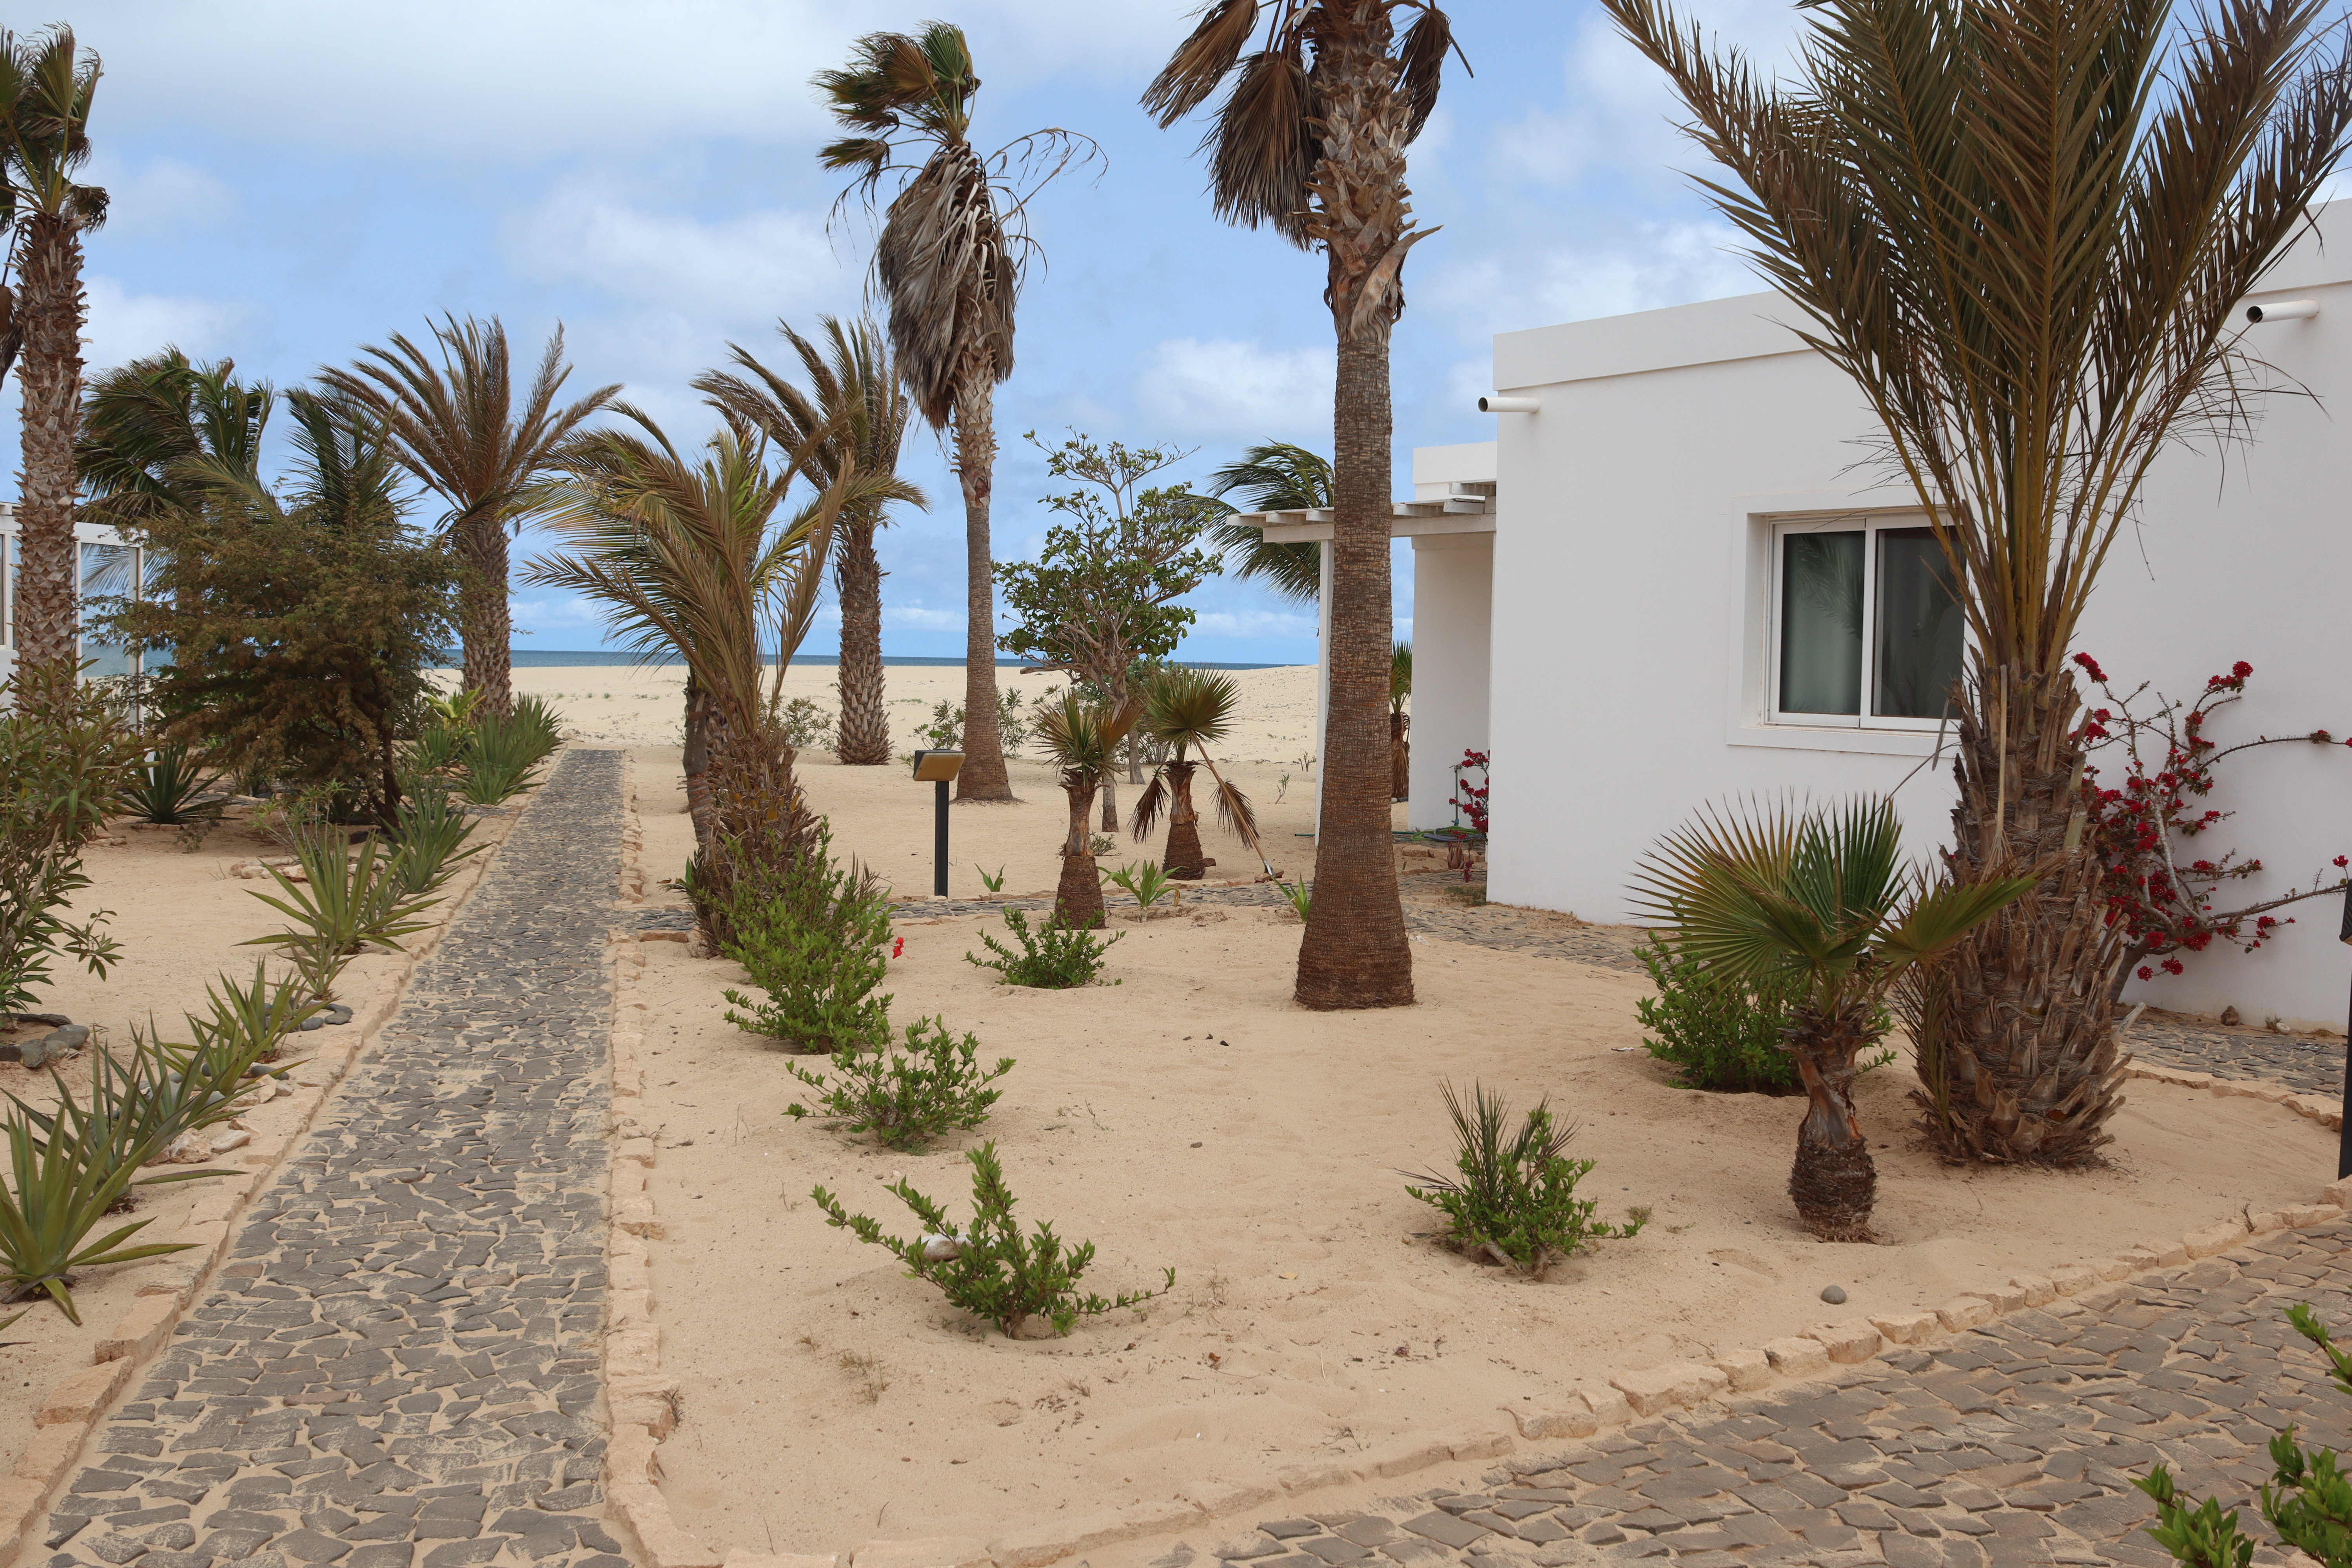 Villa On The Chaves Beach, Boavista - Cape Verde